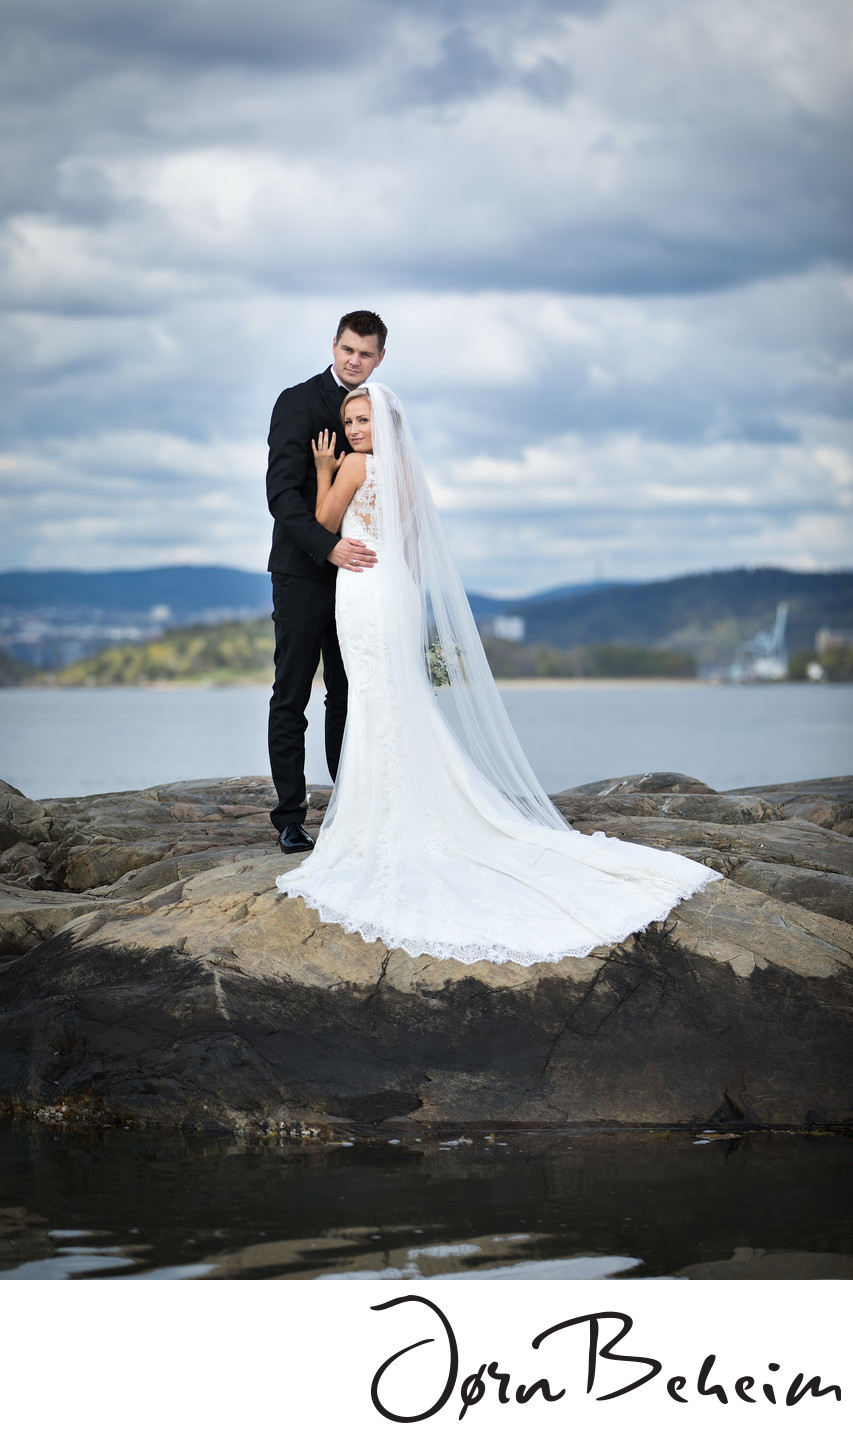 Bryllupsfoto på en øy - bryllupsfotograf Jørn Beheim